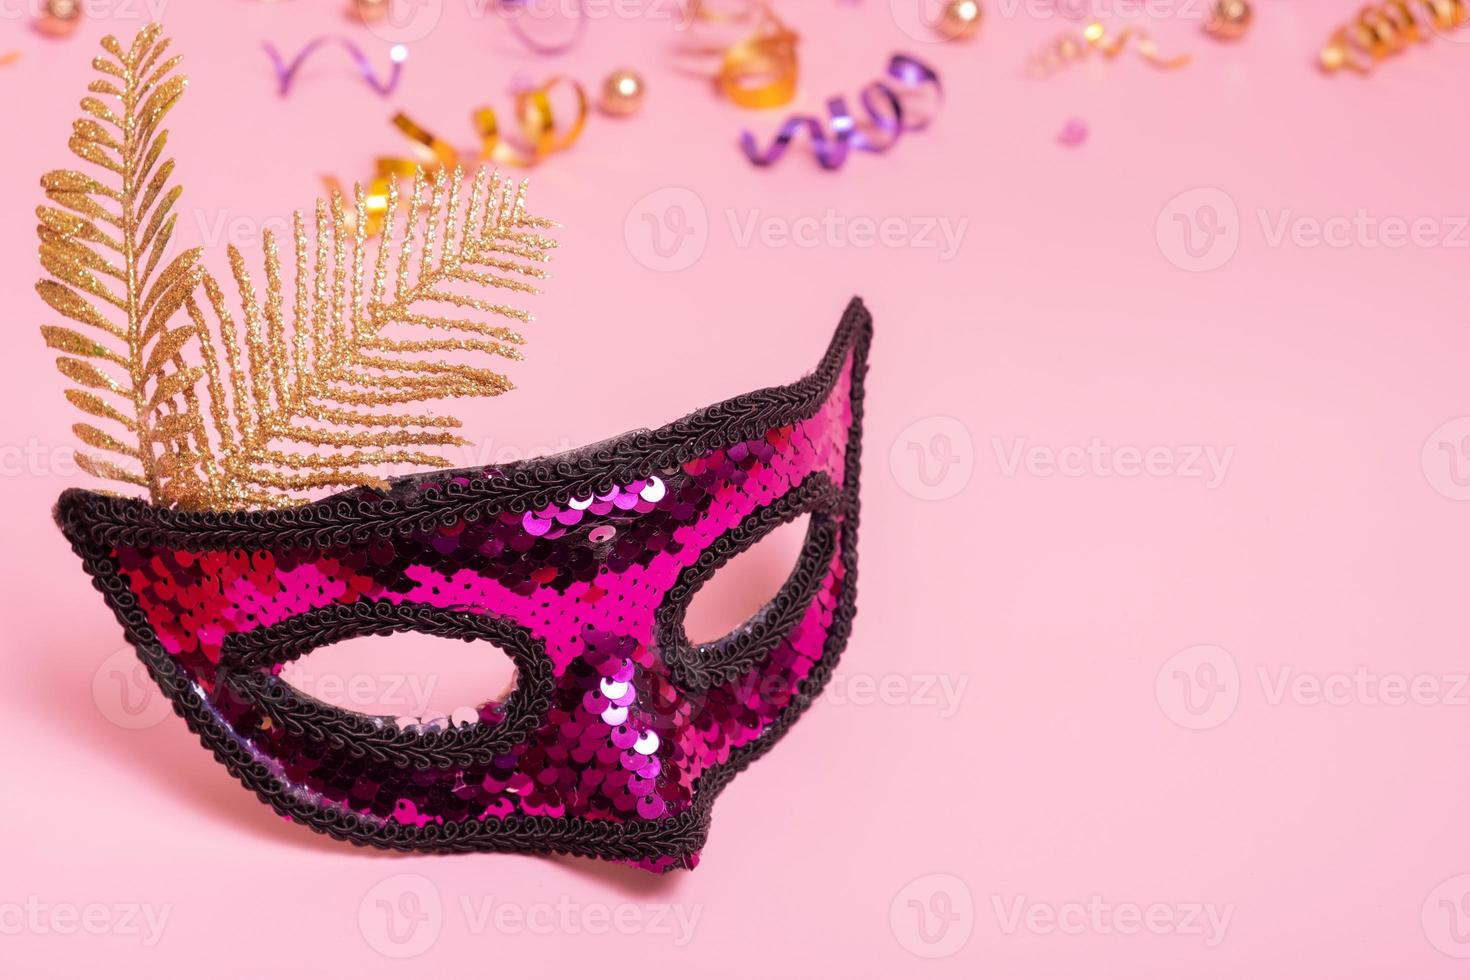 mascarilla festiva para mascarada o celebración de carnaval sobre fondo rosa foto